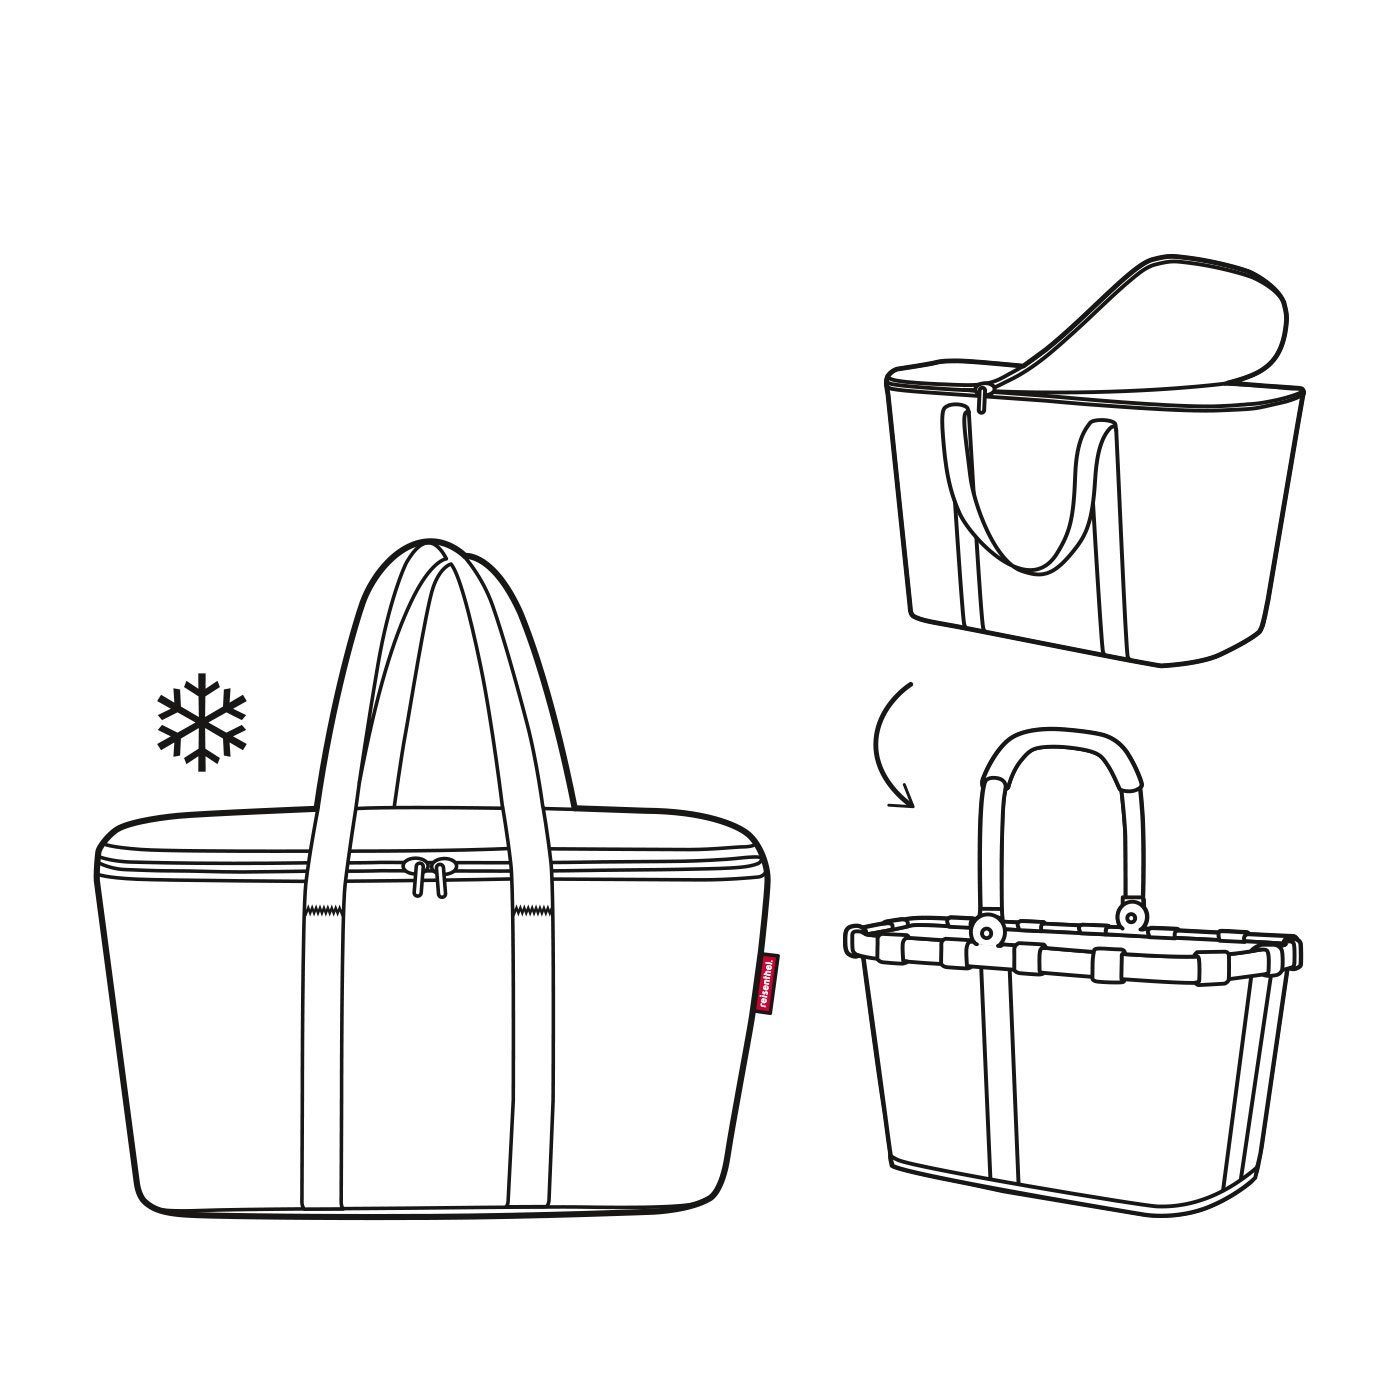 Thermotasche Isotasche aus und frame coolerbag, Einkaufskorb Picknick carrybag signature Einkaufskorb black REISENTHEL® Set